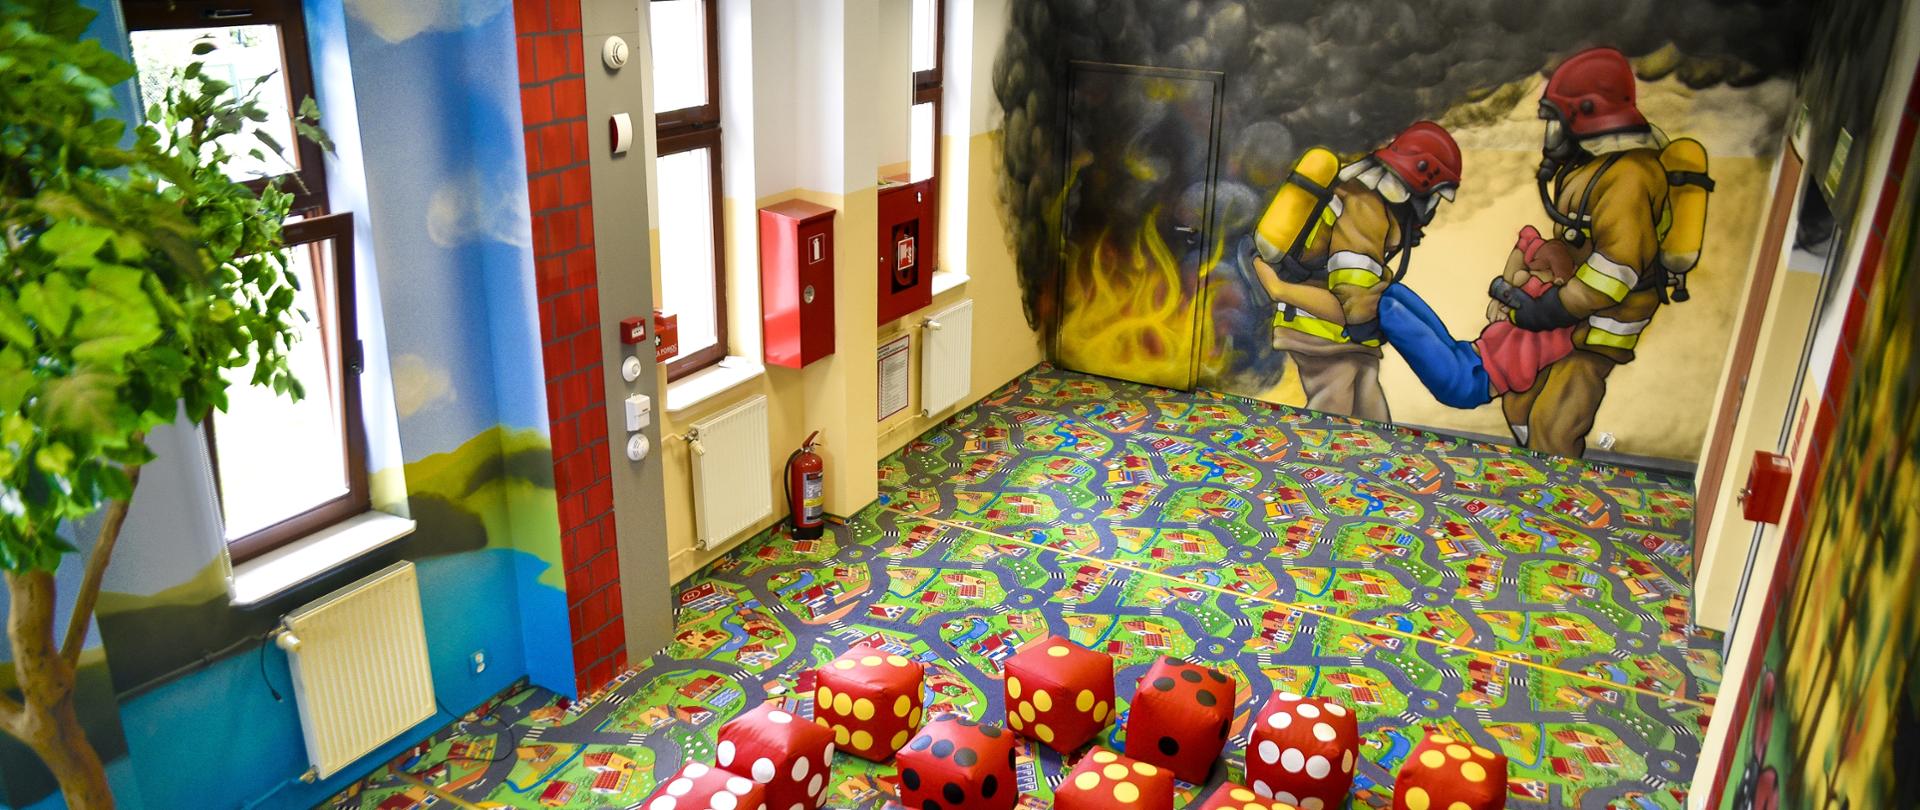 Sala edukacyjna dla dzieci. Na dywanie pufy w kształcie kostki do grania, na ścianach namalowanych jest dwóch strażaków wynoszących osobę poszkodowaną. Na podłodze znajduje się kolorowa wykładzina. 